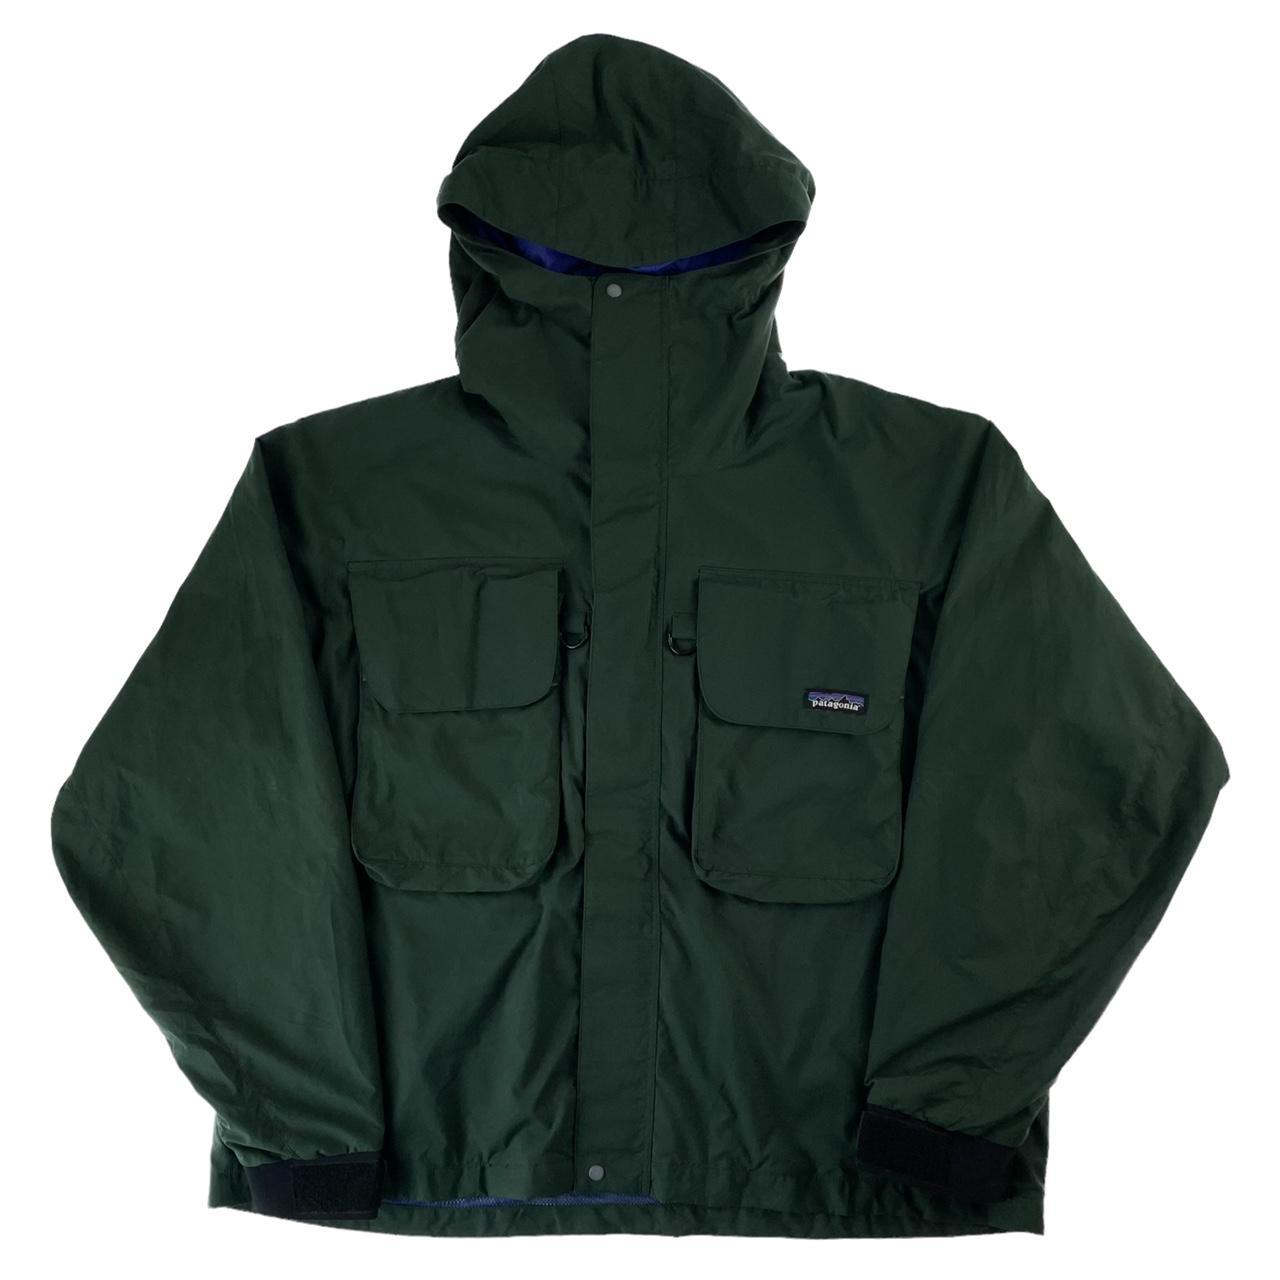 Vintage Patagonia SST pocket jacket size... - Depop